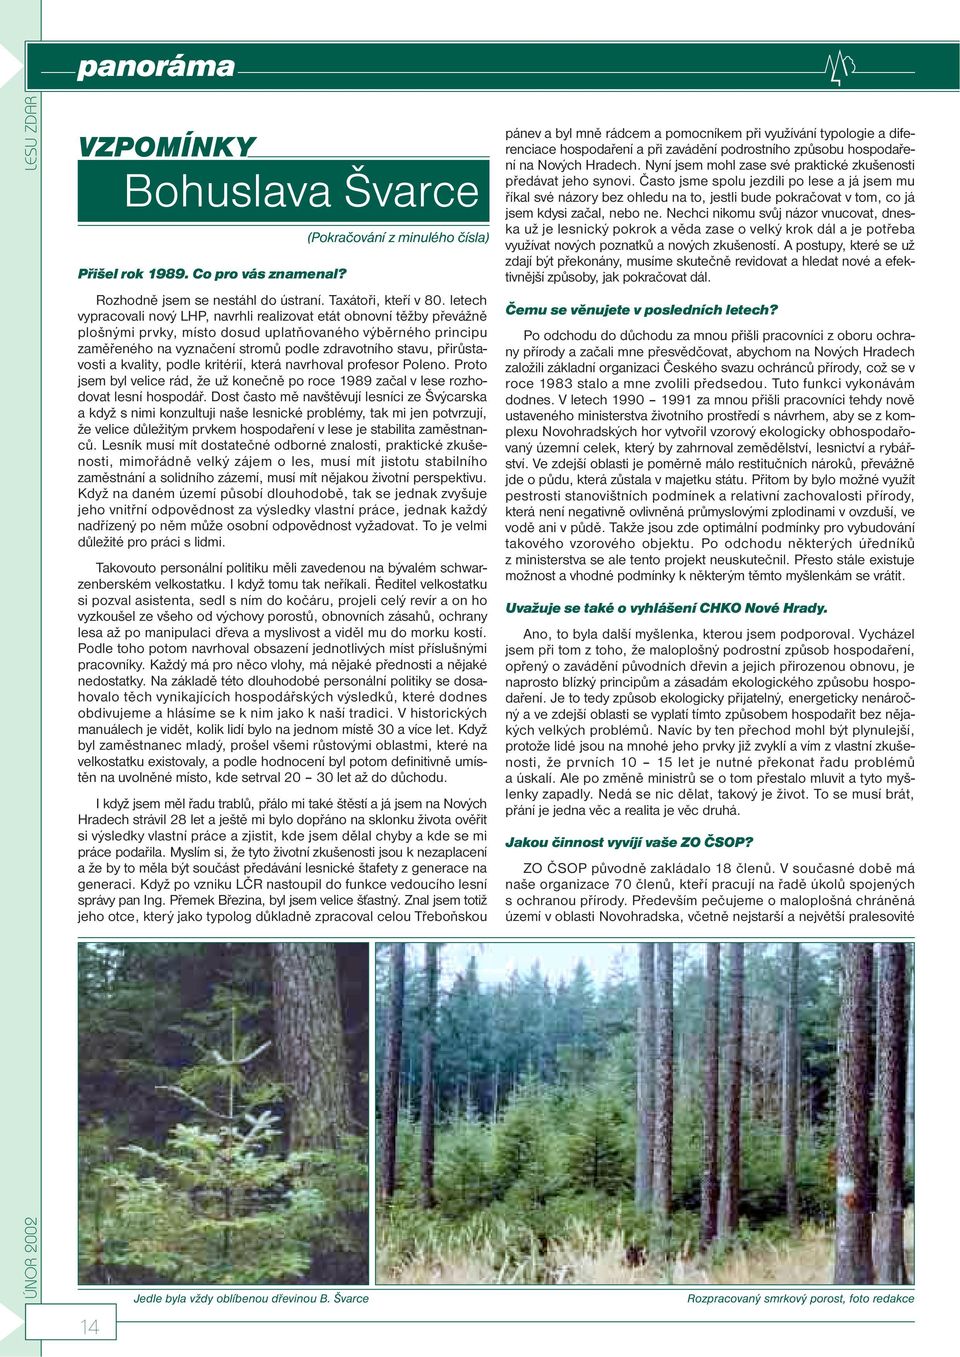 přirůstavosti a kvality, podle kritérií, která navrhoval profesor Poleno. Proto jsem byl velice rád, že už konečně po roce 1989 začal v lese rozhodovat lesní hospodář.